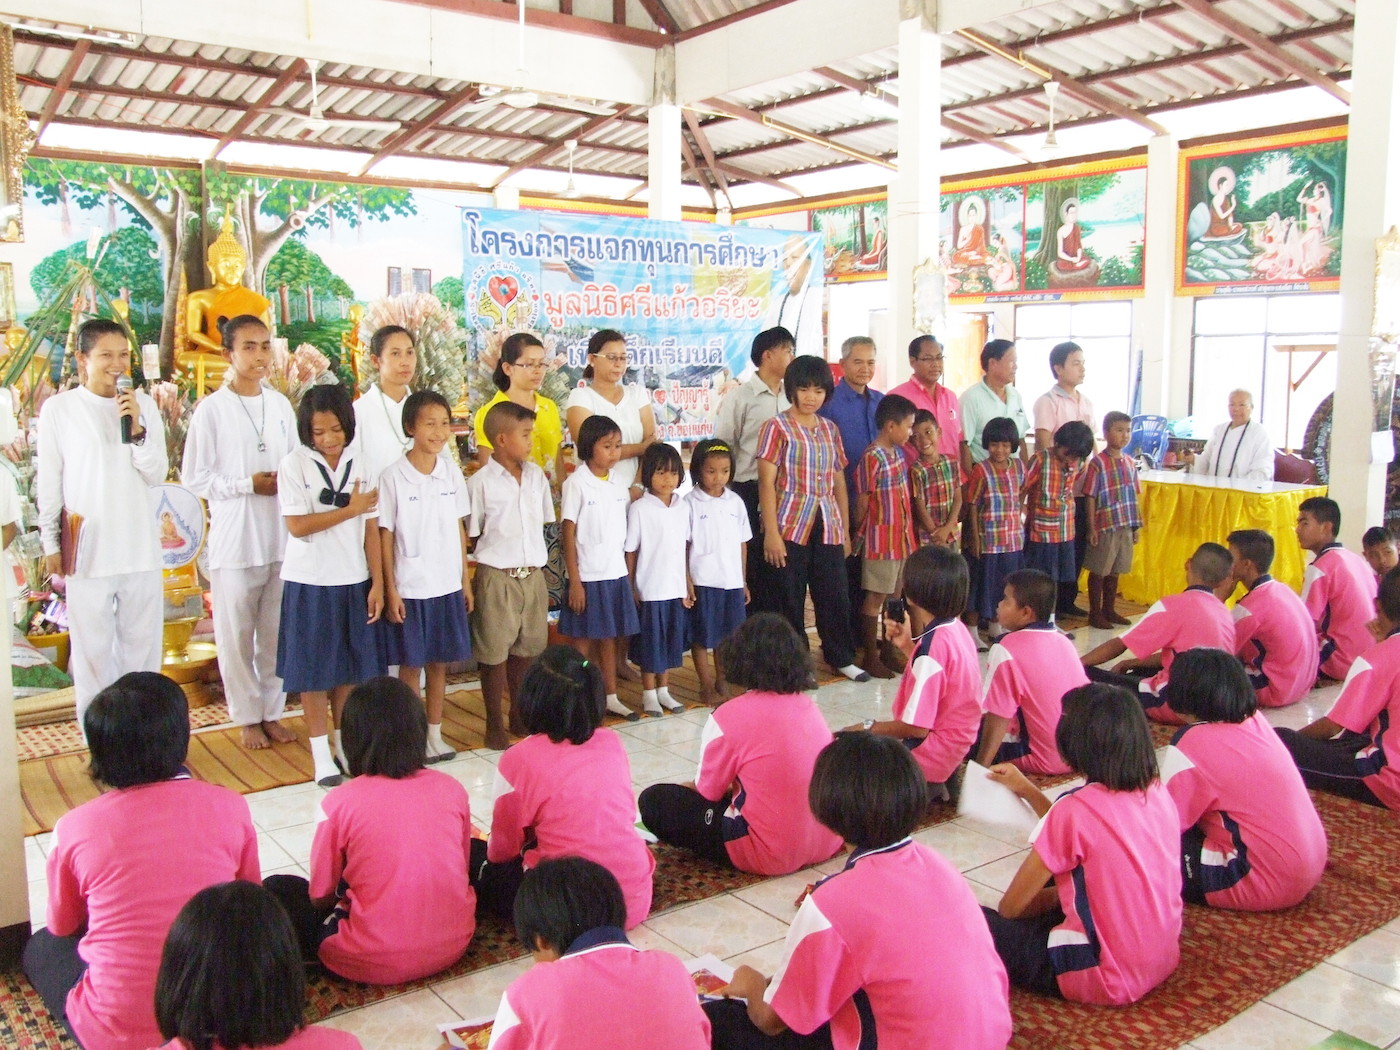 โครงการมอบทุนการศึกษาเพื่อเด็กเรียนดี ครั้งที่ 2   วันที่ 23 สิงหาคม 2554  แก่นักเรียนโรงเรียนบ้านหนองกระทุ่ม    โรงเรียนสระครก